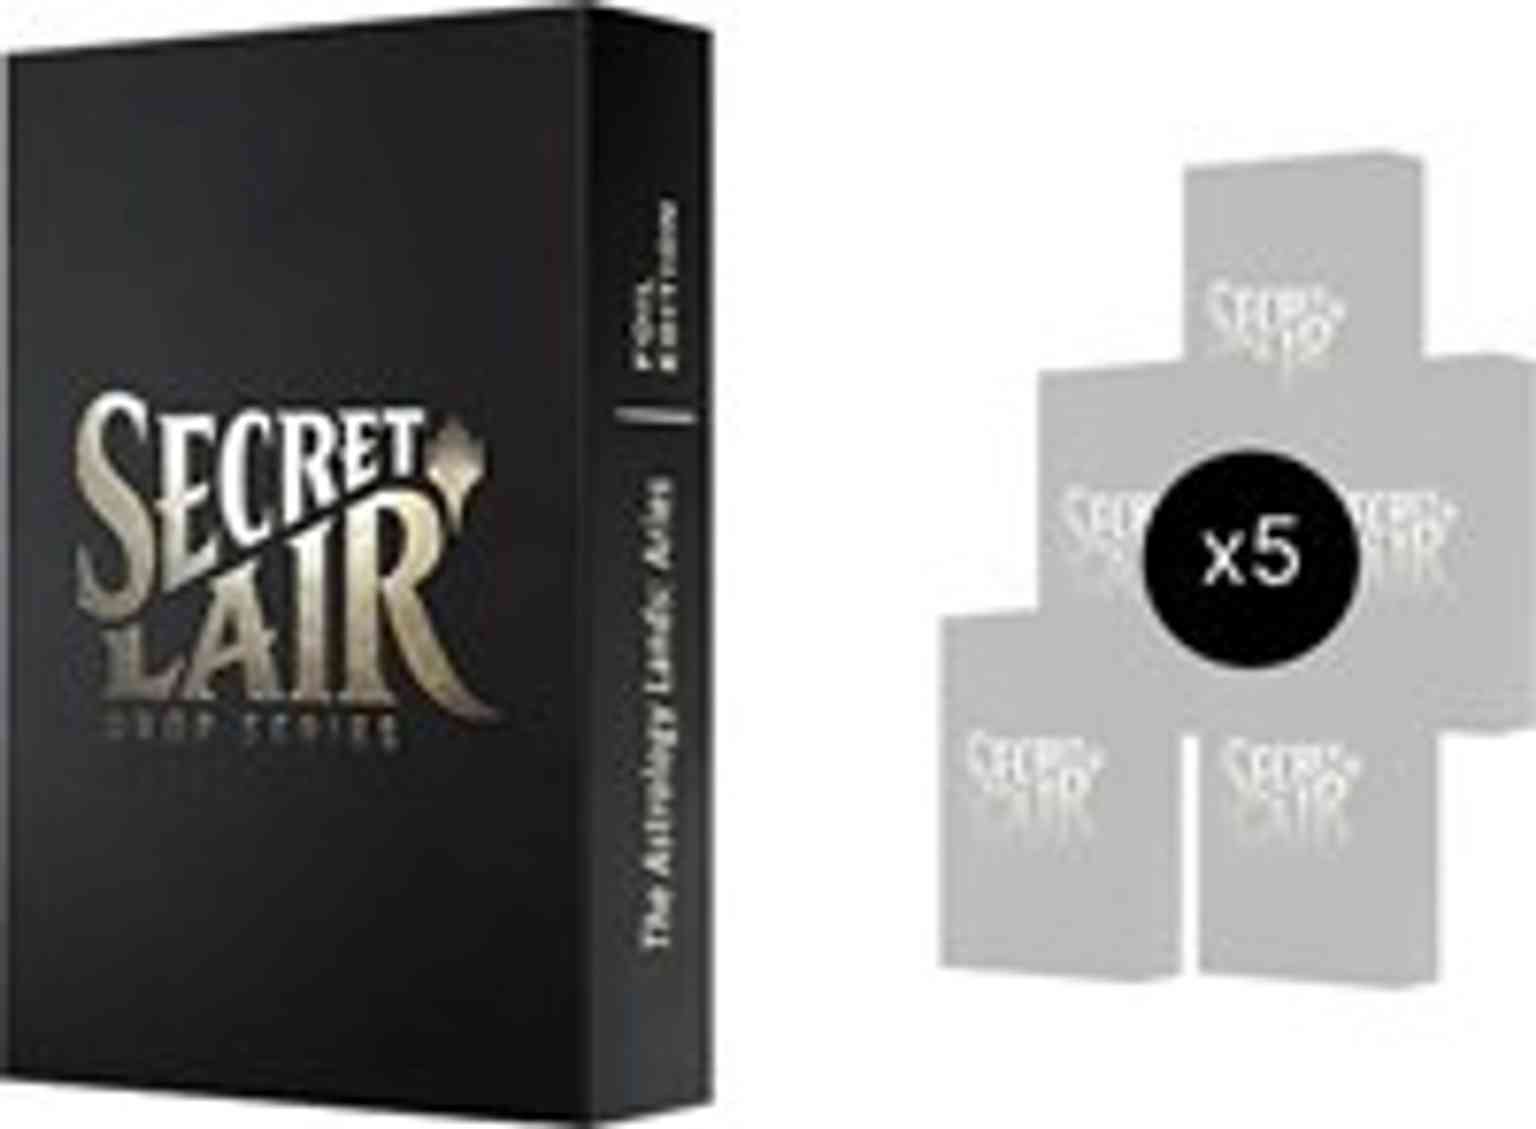 Secret Lair: Astrology Lands (Aries) Bundle - Foil magic card front